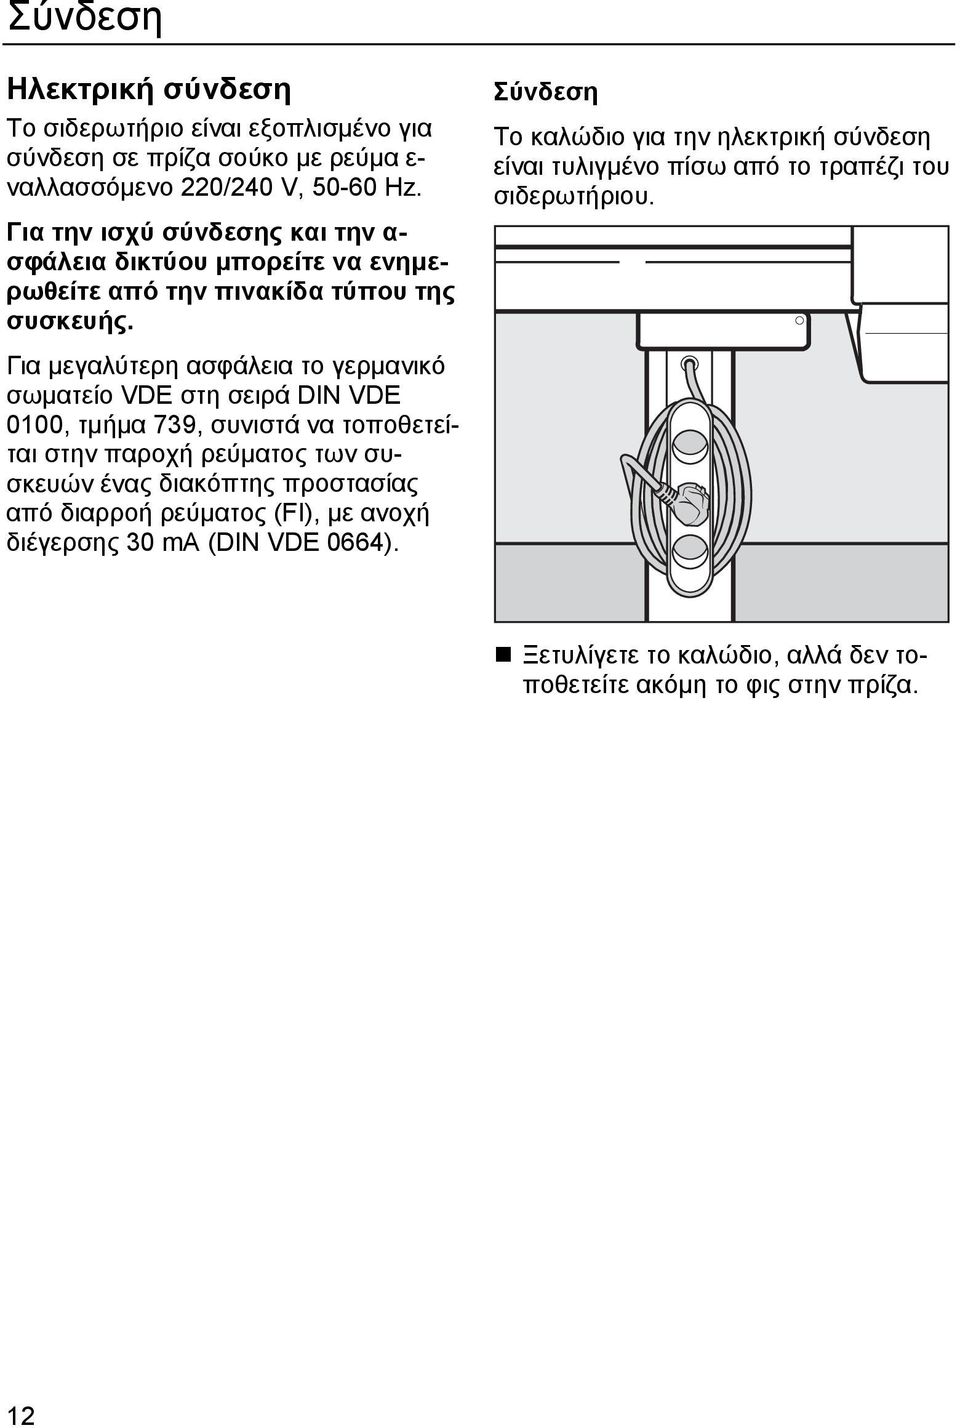 Για μεγαλύτερη ασφάλεια το γερμανικό σωματείο VDE στη σειρά DIN VDE 0100, τμήμα 739, συνιστά να τοποθετείται στην παροχή ρεύματος των συσκευών ένας διακόπτης